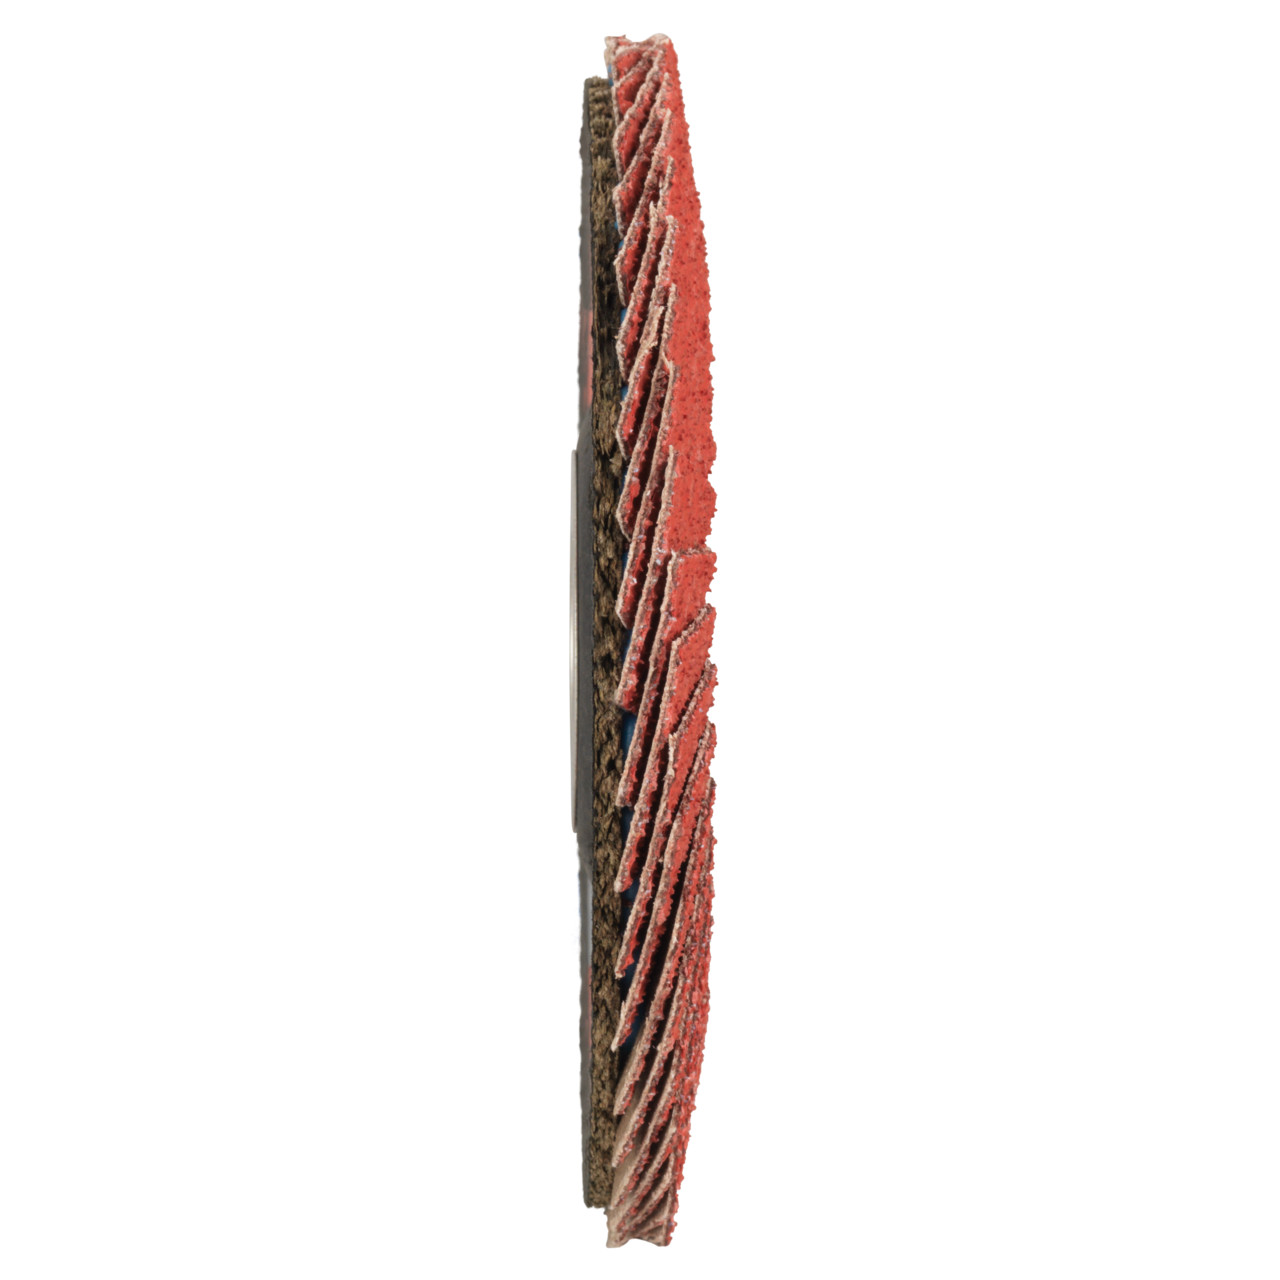 TYROLIT getande borgring DxH 125x22,23 CERAMIC voor roestvrij staal, P80, vorm: 28A - rechte uitvoering (uitvoering glasvezeldragerhuis), Art. 34166688